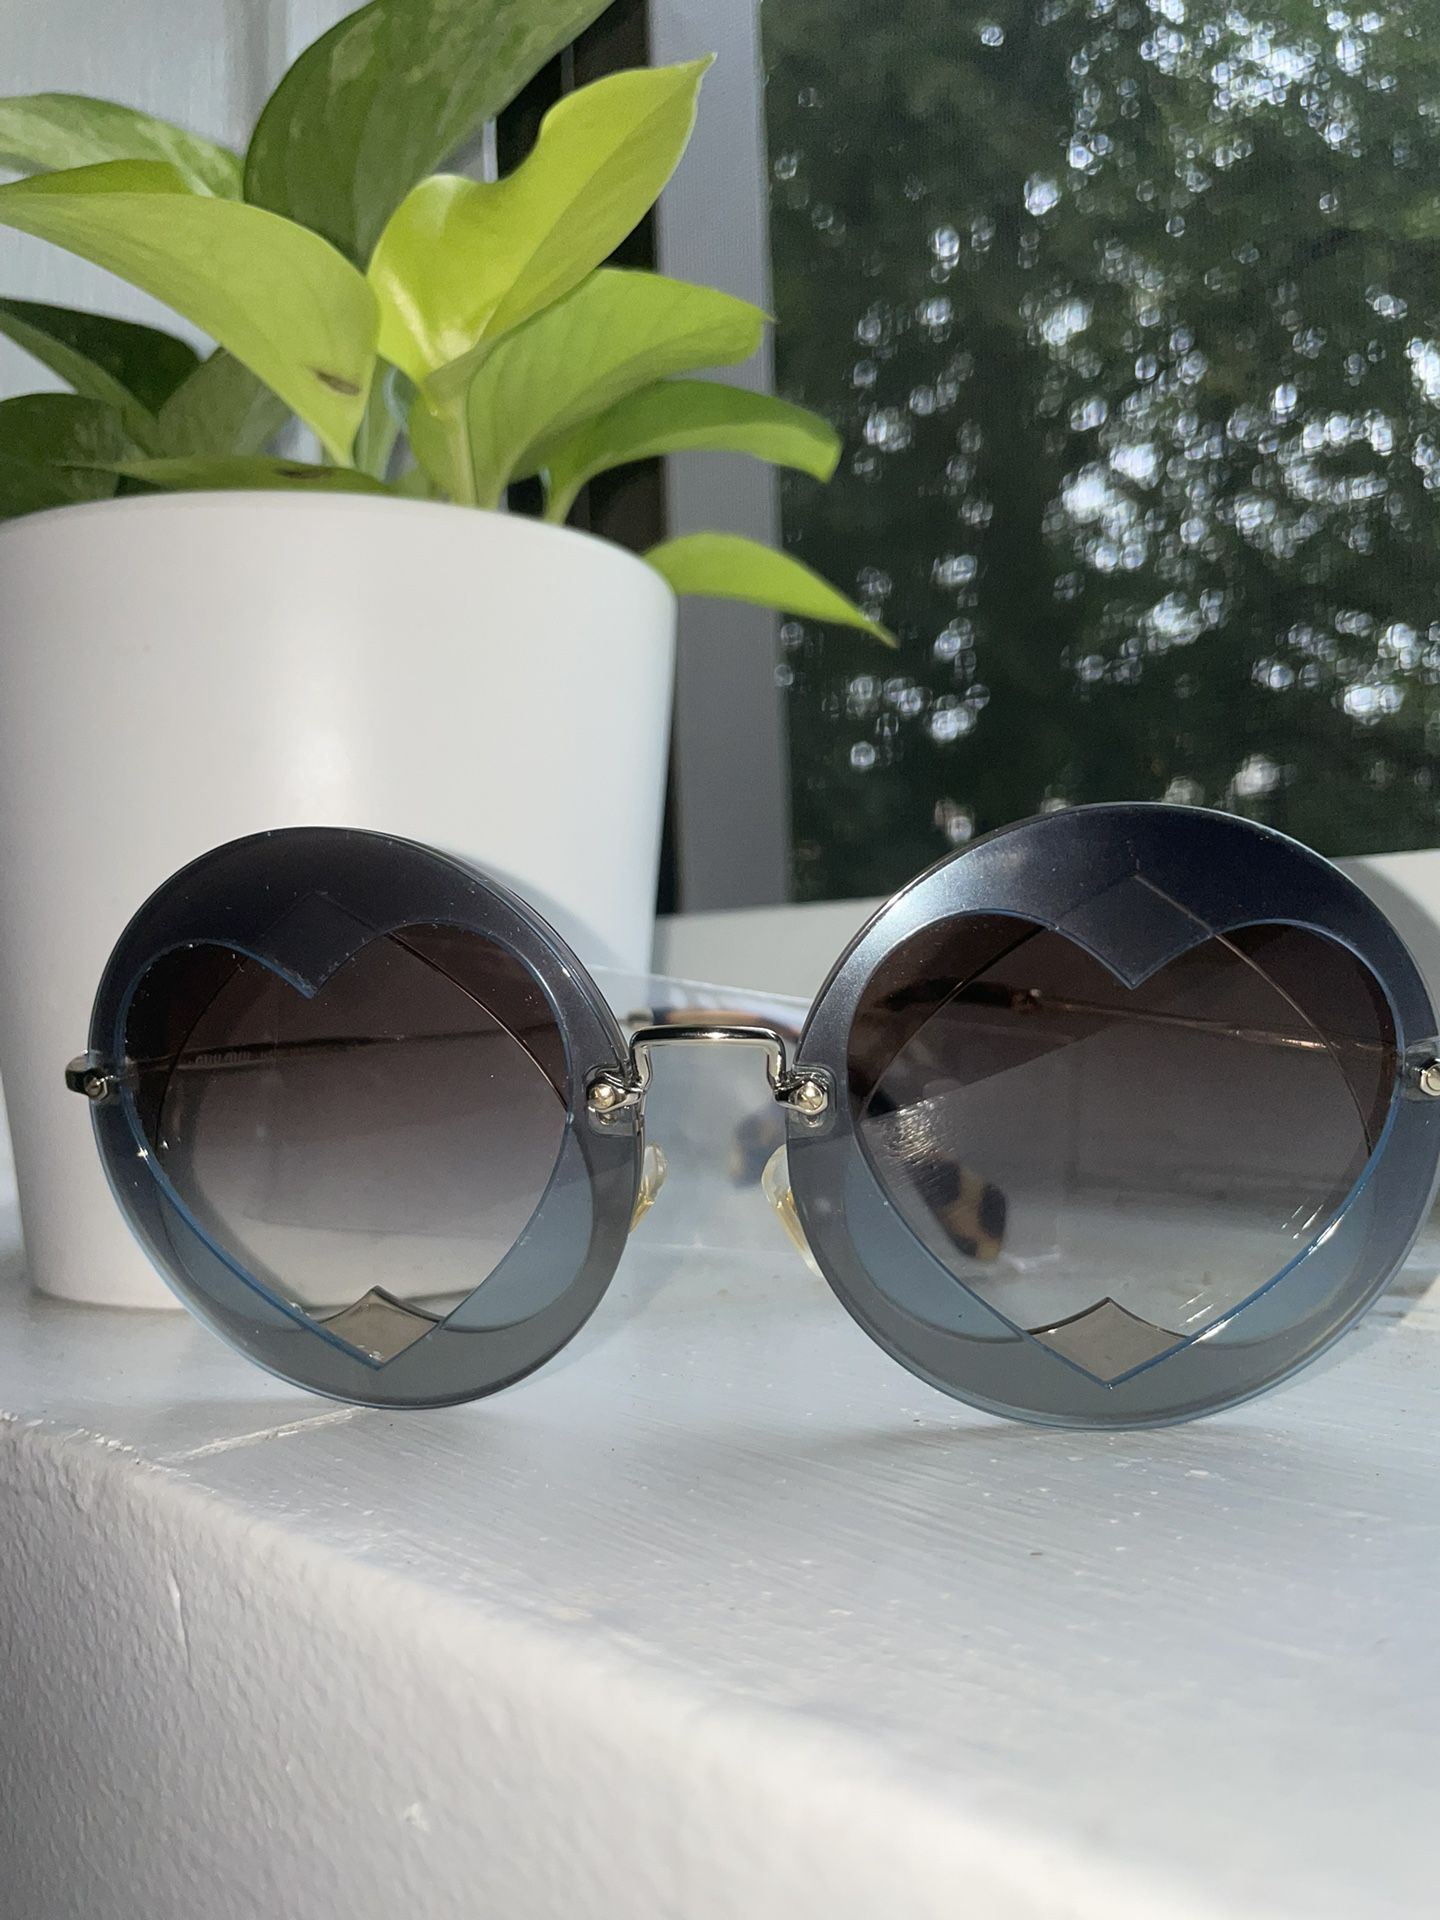 Miu Miu Designer Sunglasses for Sale in Brooklyn, NY - OfferUp